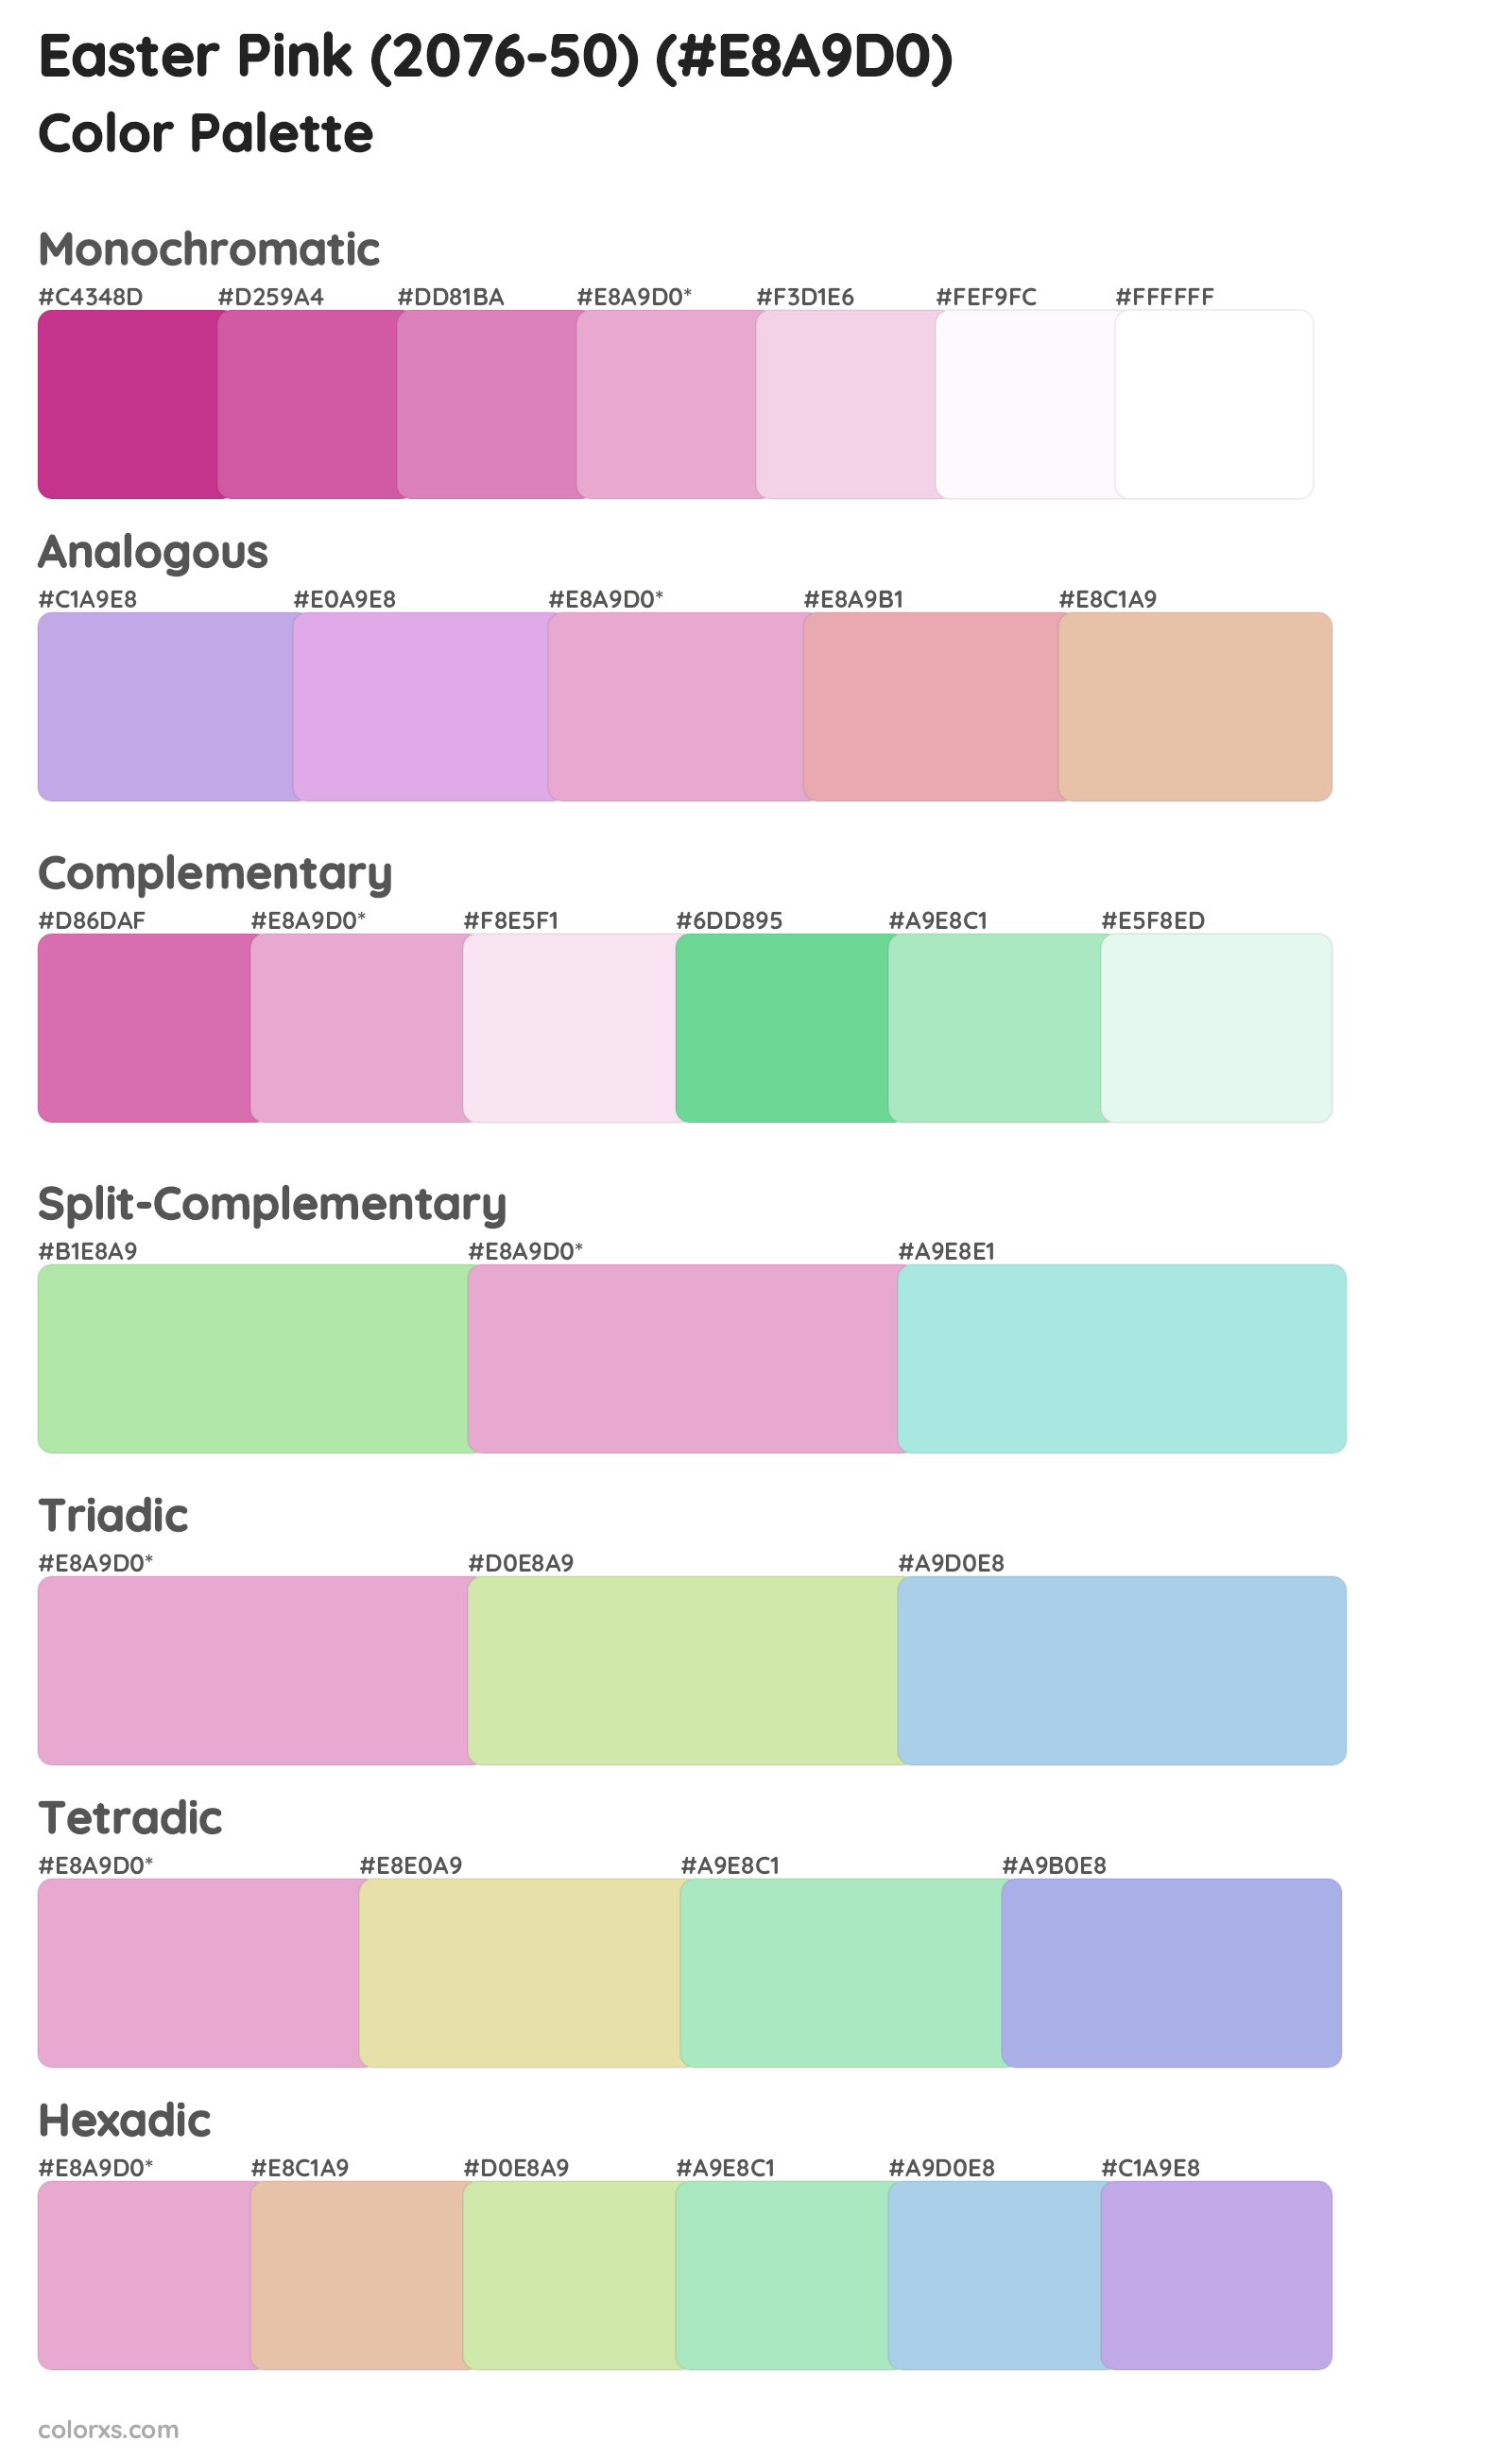 Easter Pink (2076-50) Color Scheme Palettes